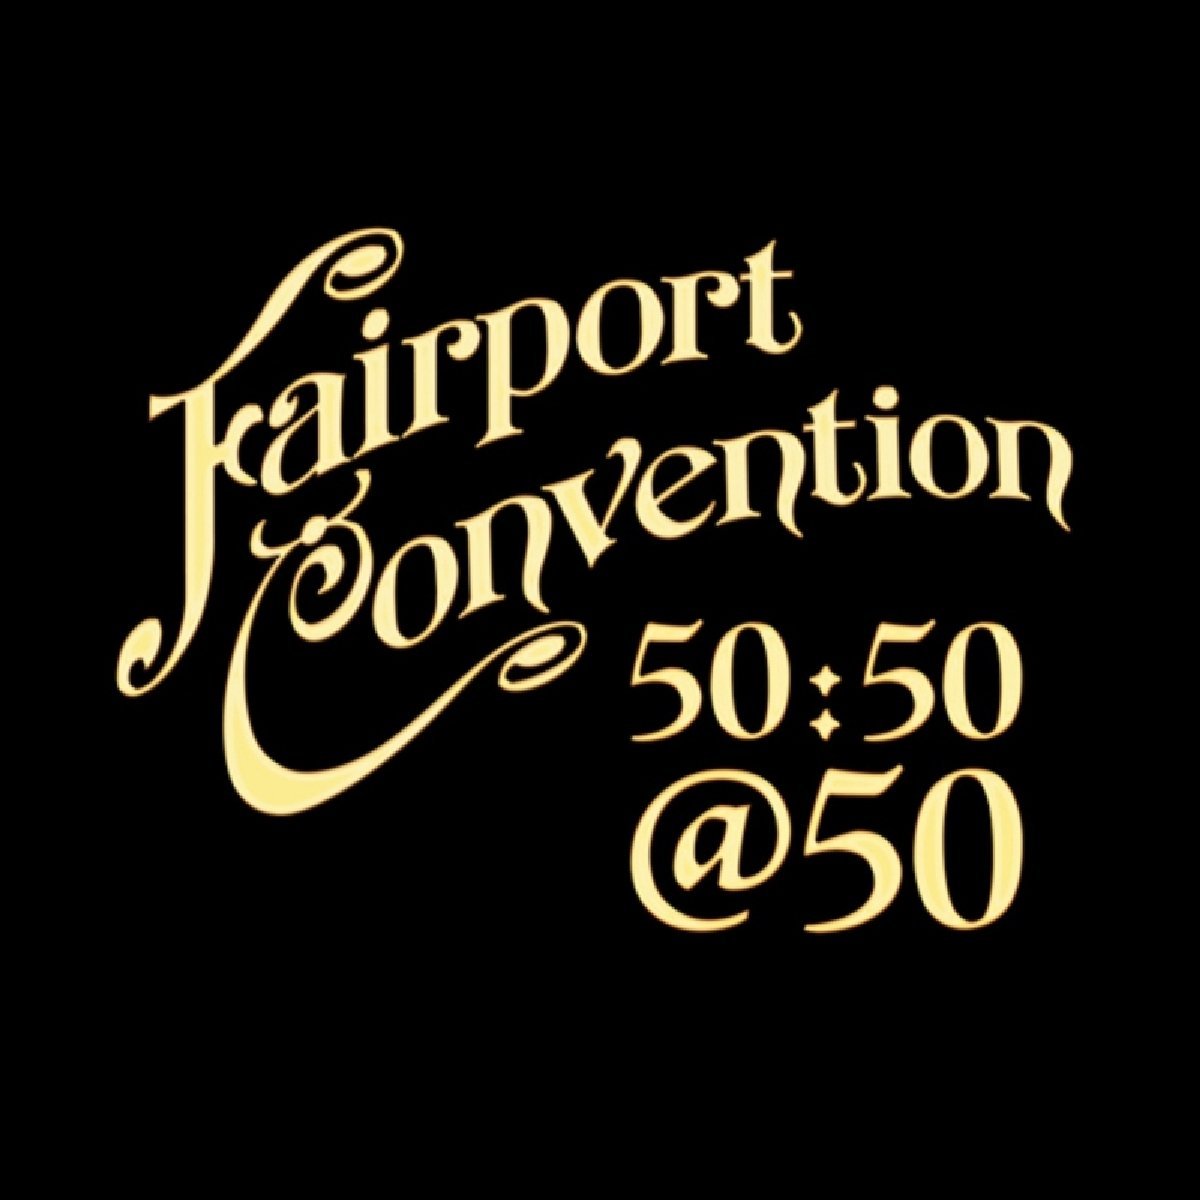 Migliori dischi del 2017 - Fairport Convention